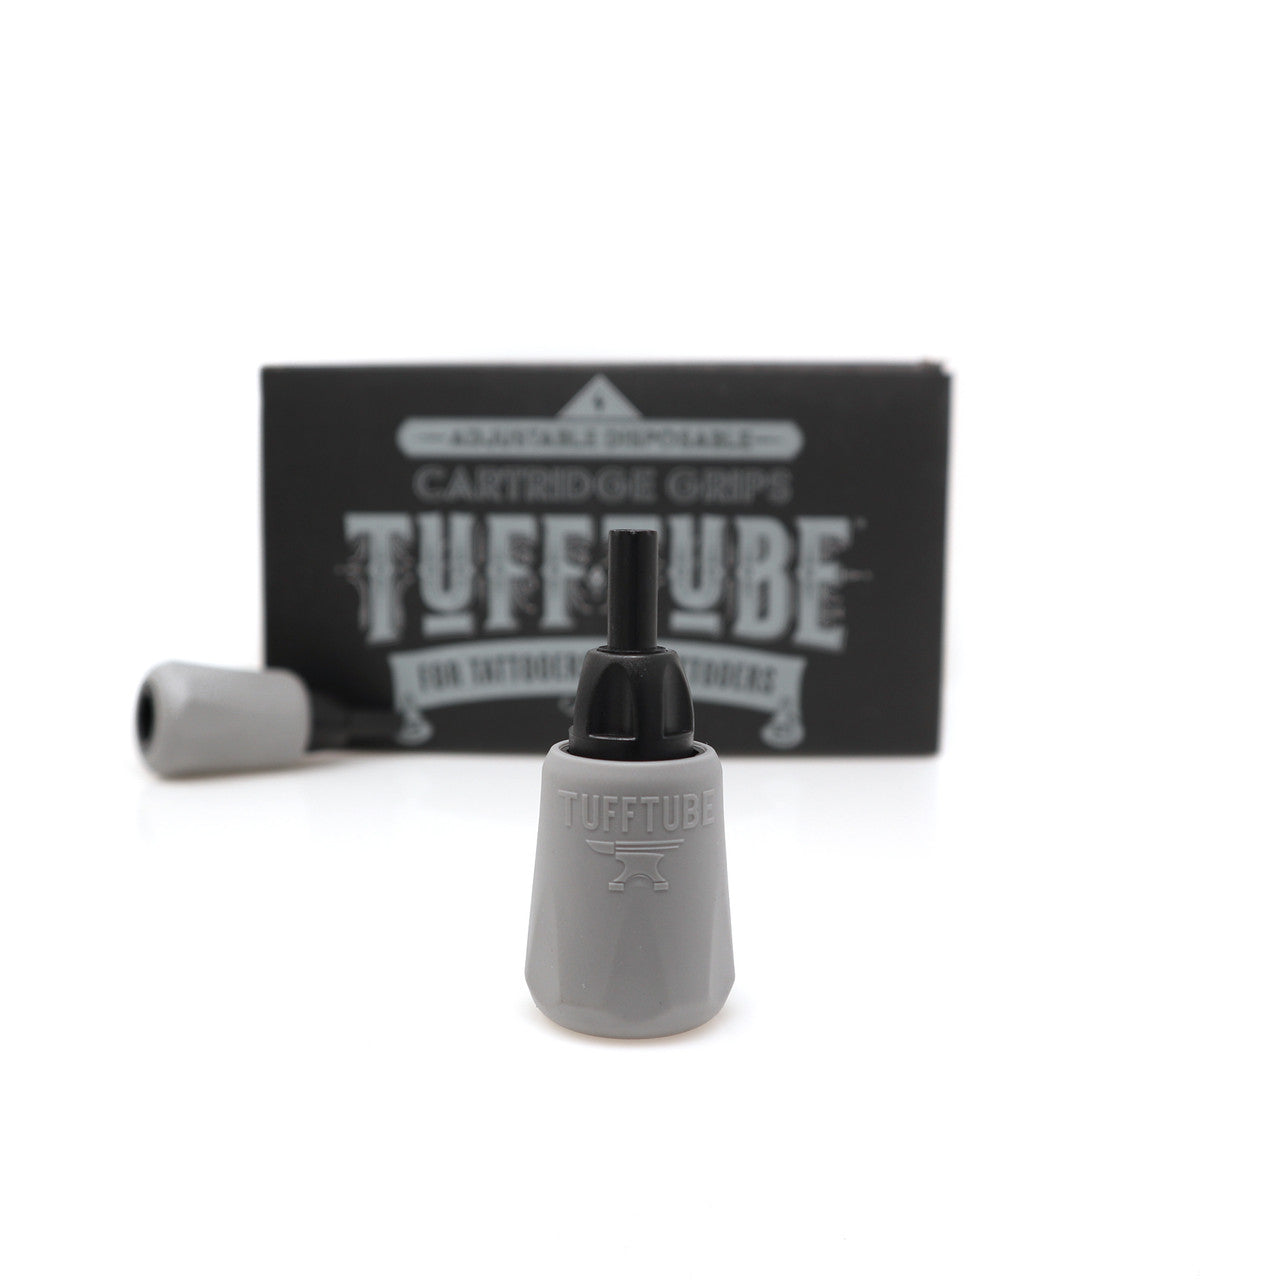 NEW!! Tuff Tube Cartridge Grip. 35mm 15/Box - Standard Fit